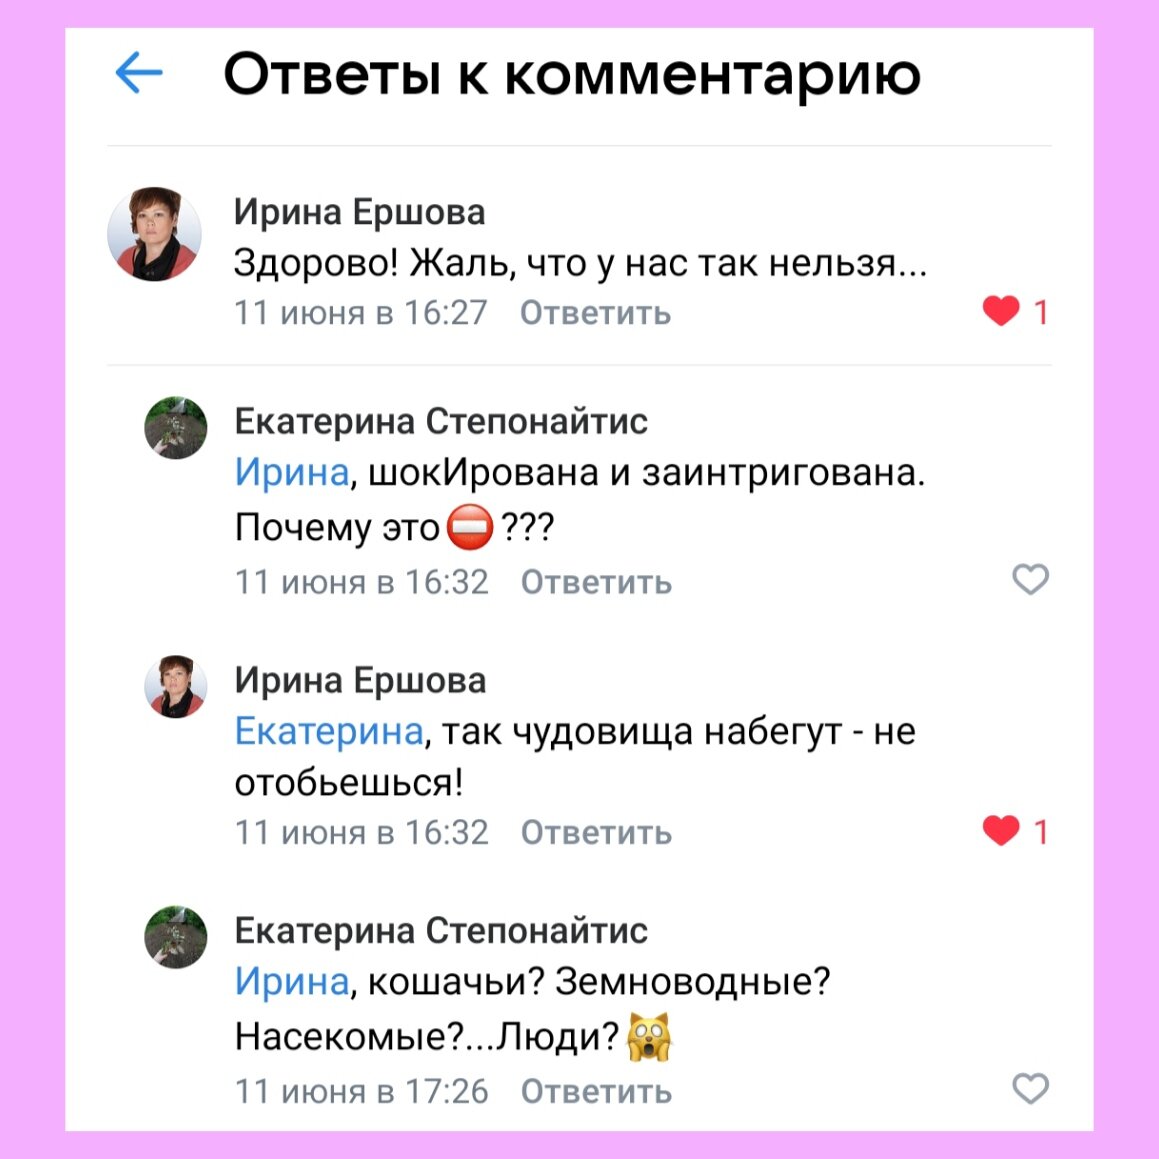 Из переписки с друзьями ВКонтакте